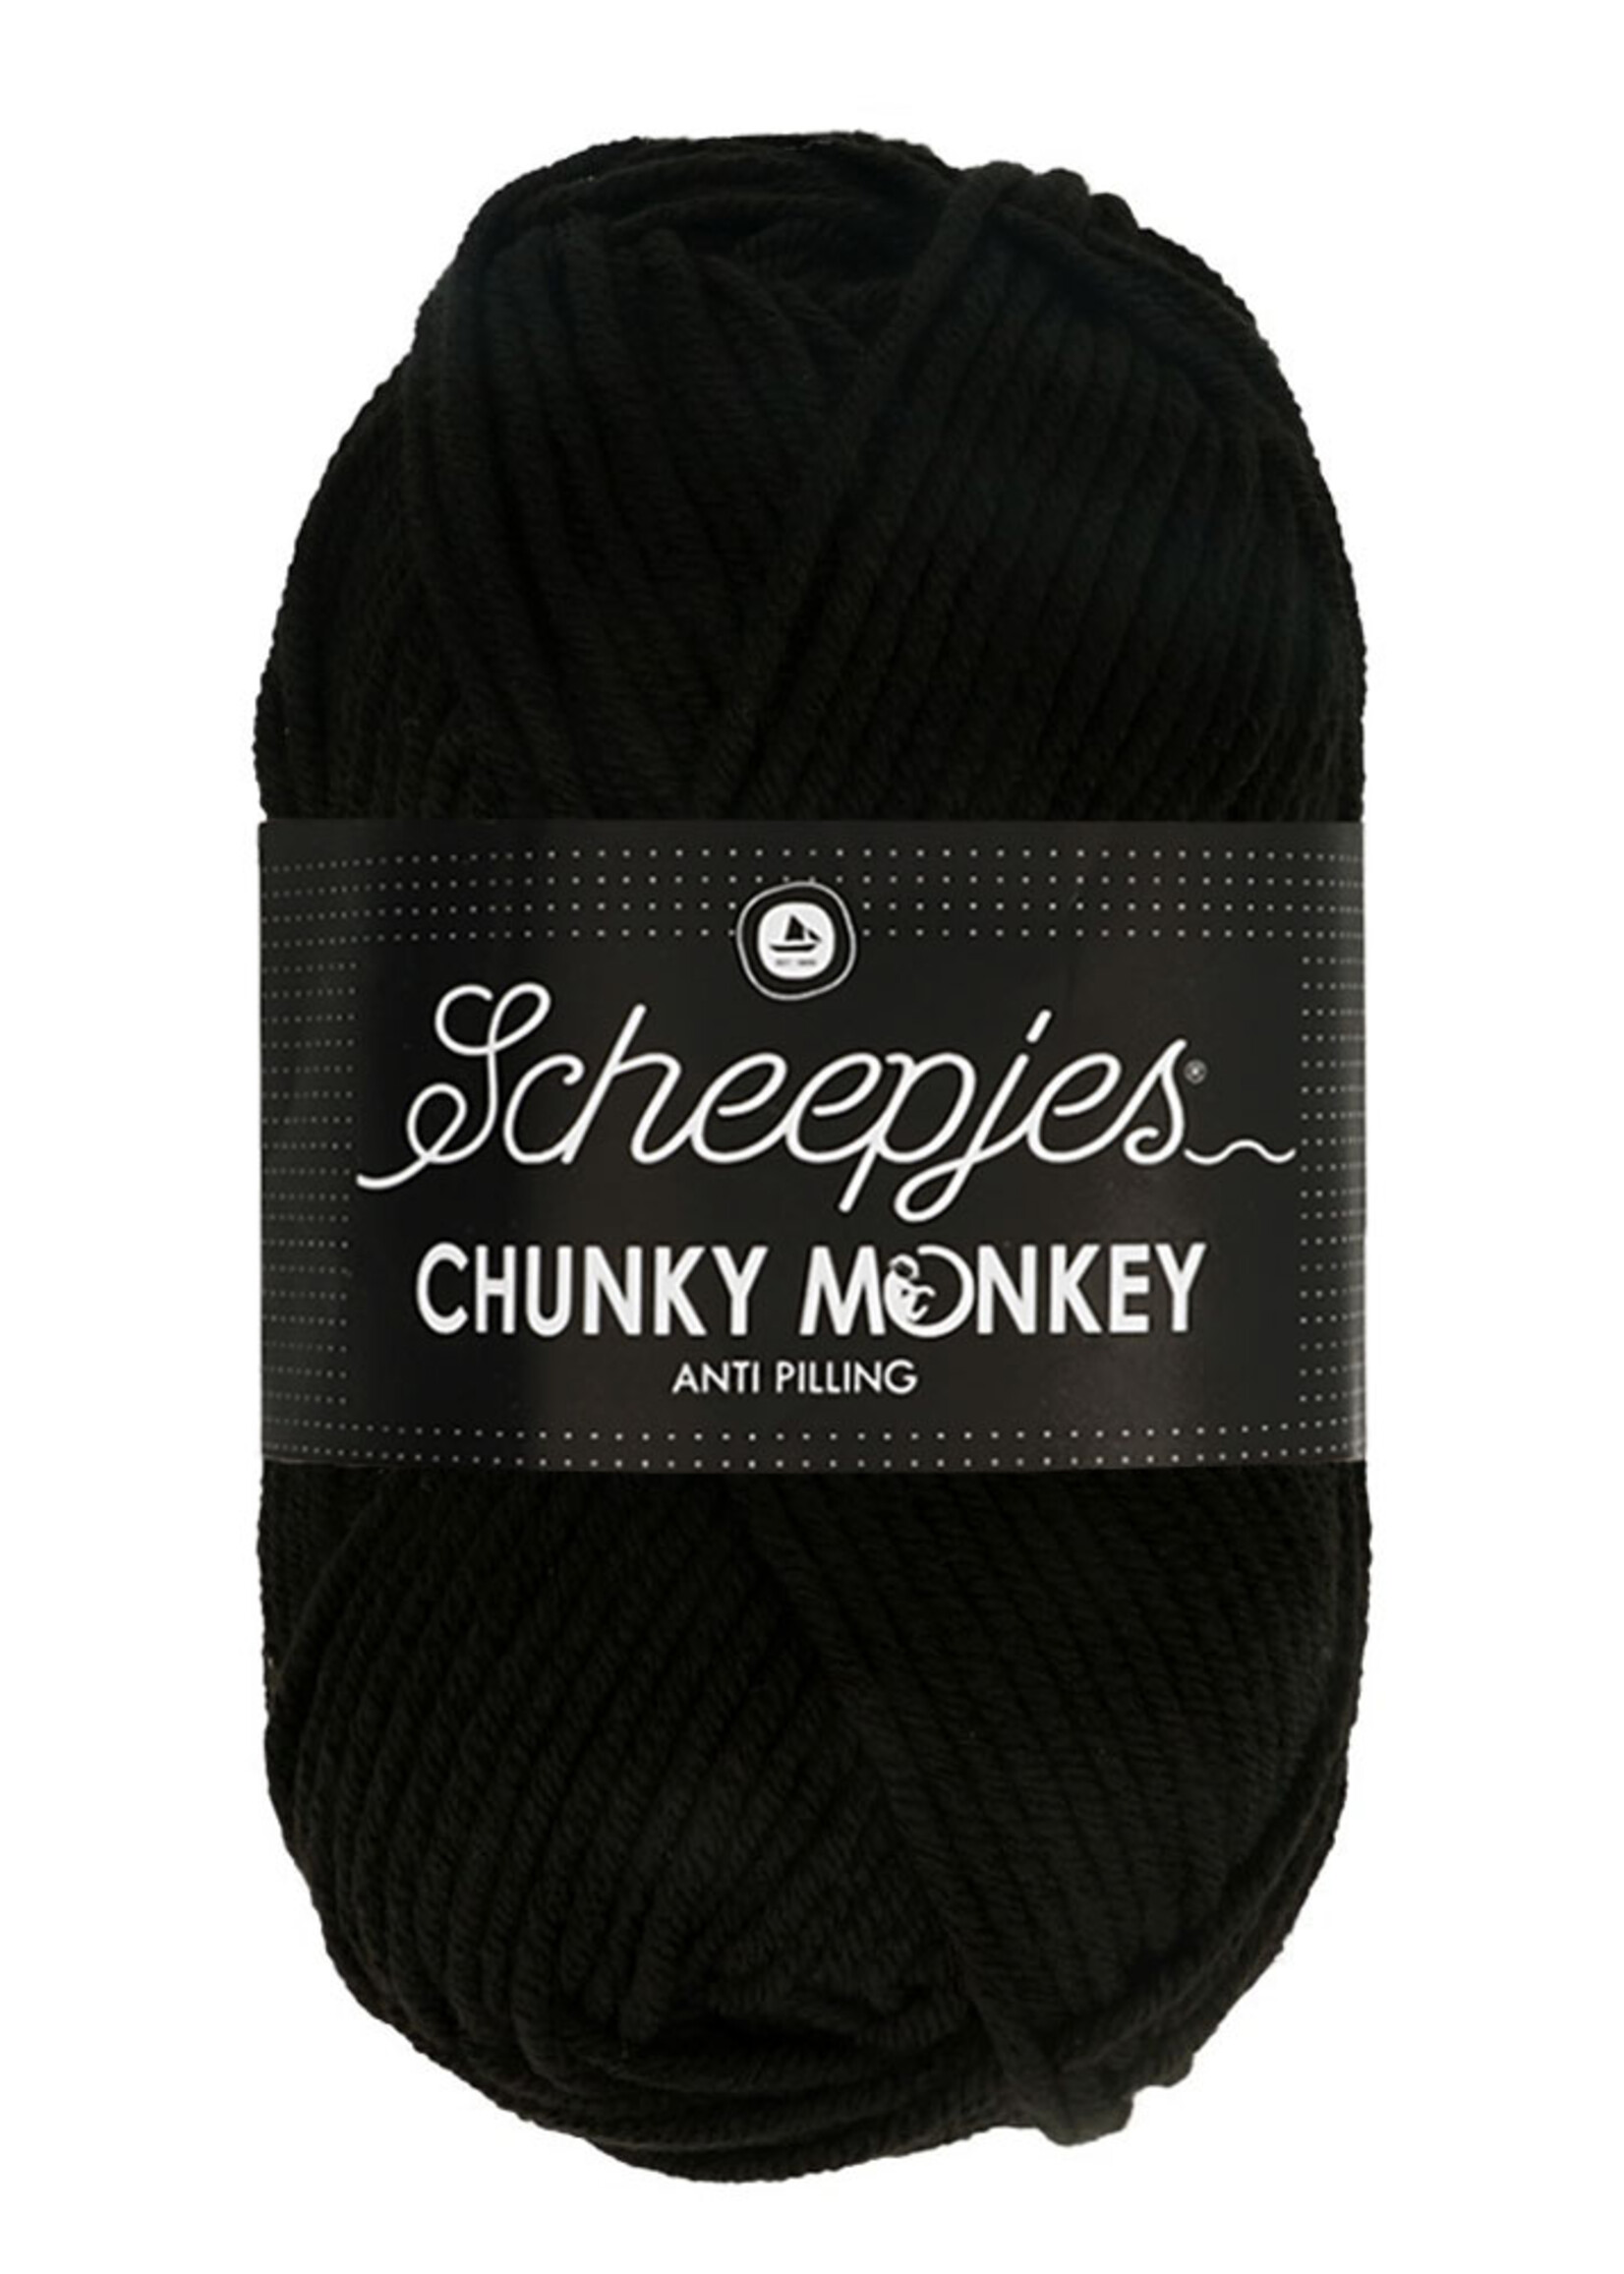 Scheepjes Chunky Monkey - Scheepjes -1002 Black